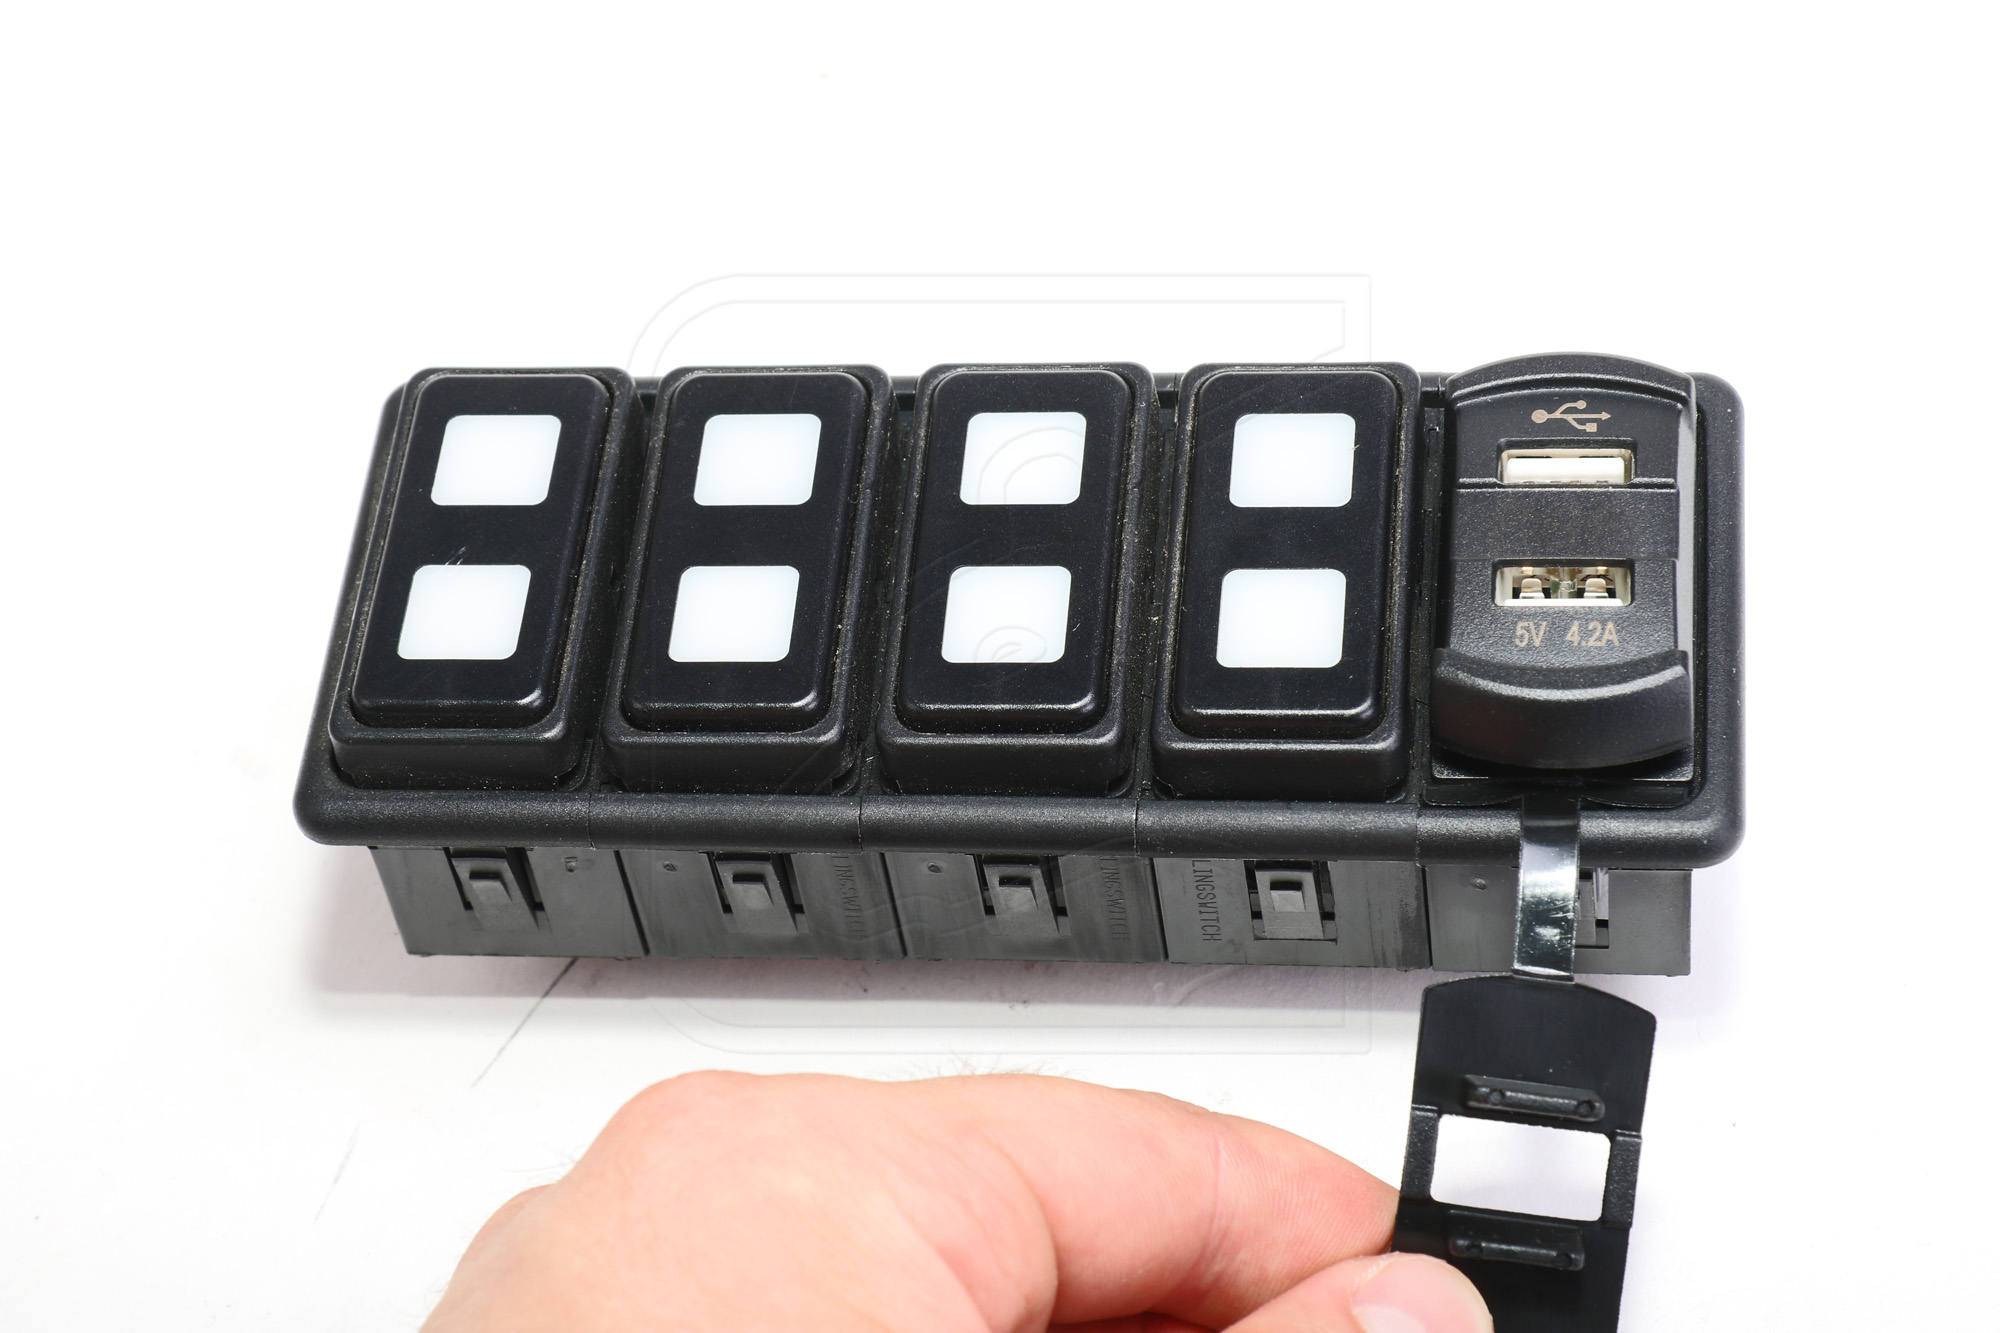 ▷ Doppel-USB Steckdose 4,2 A für Schalterkonsole - hier erhältlich!